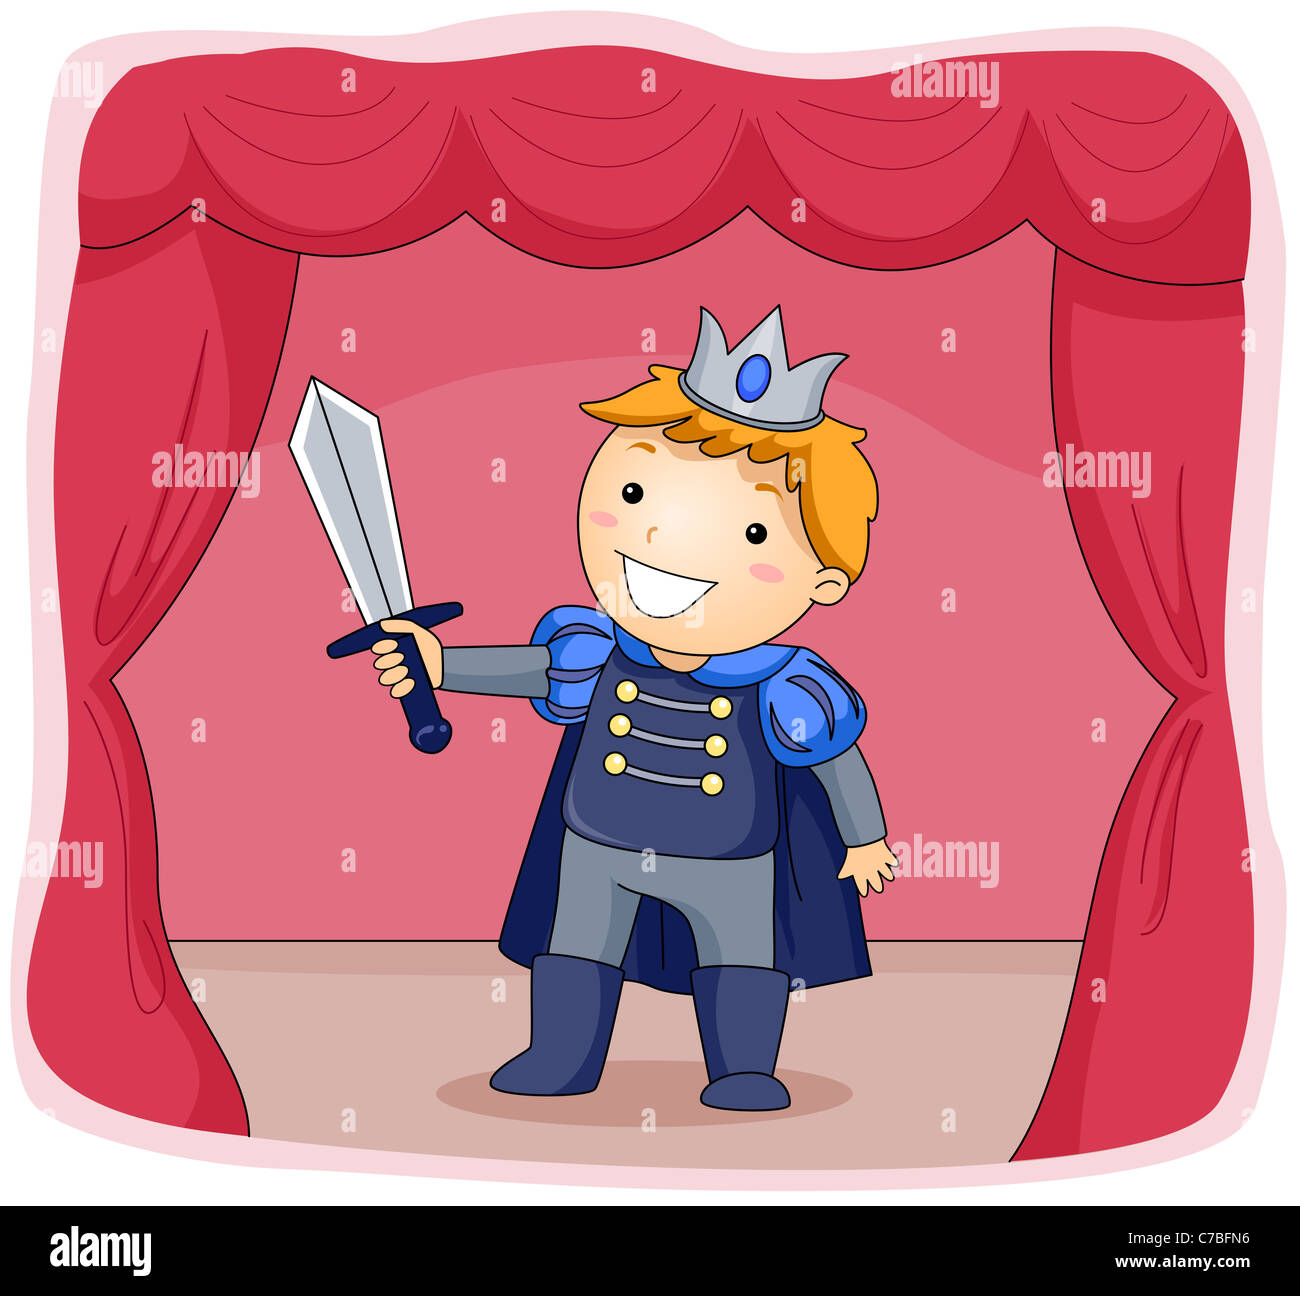 Ilustración de un niño vestido como un príncipe actuando en una etapa de juego Foto de stock